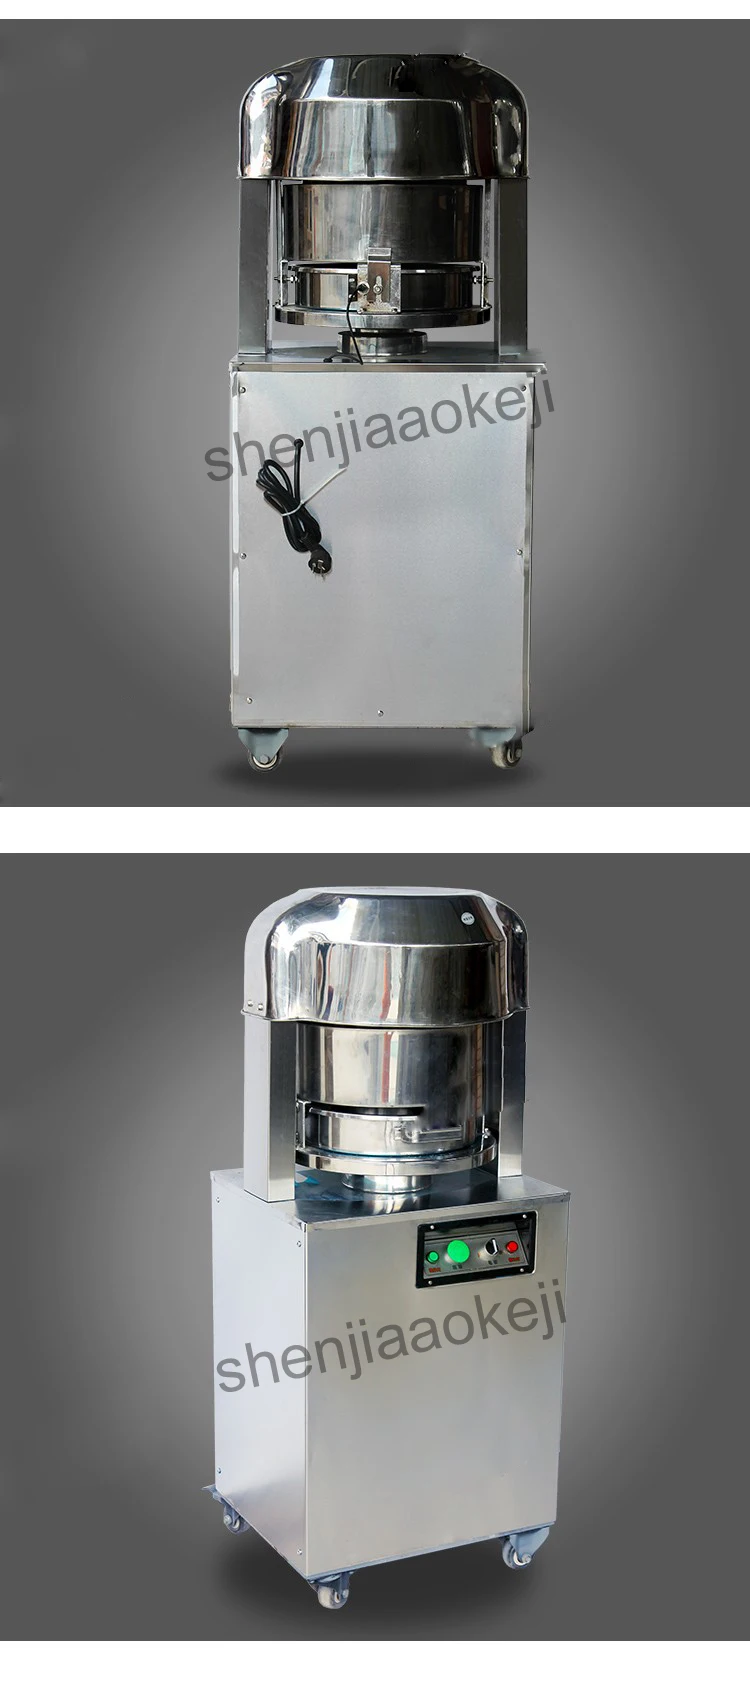 220 В 750 Вт 1 шт. Нержавеющая сталь коммерческих тестоделитель машинка для резки теста хлеб cutter YB-36 Хлеборезка хлебопекарного оборудования